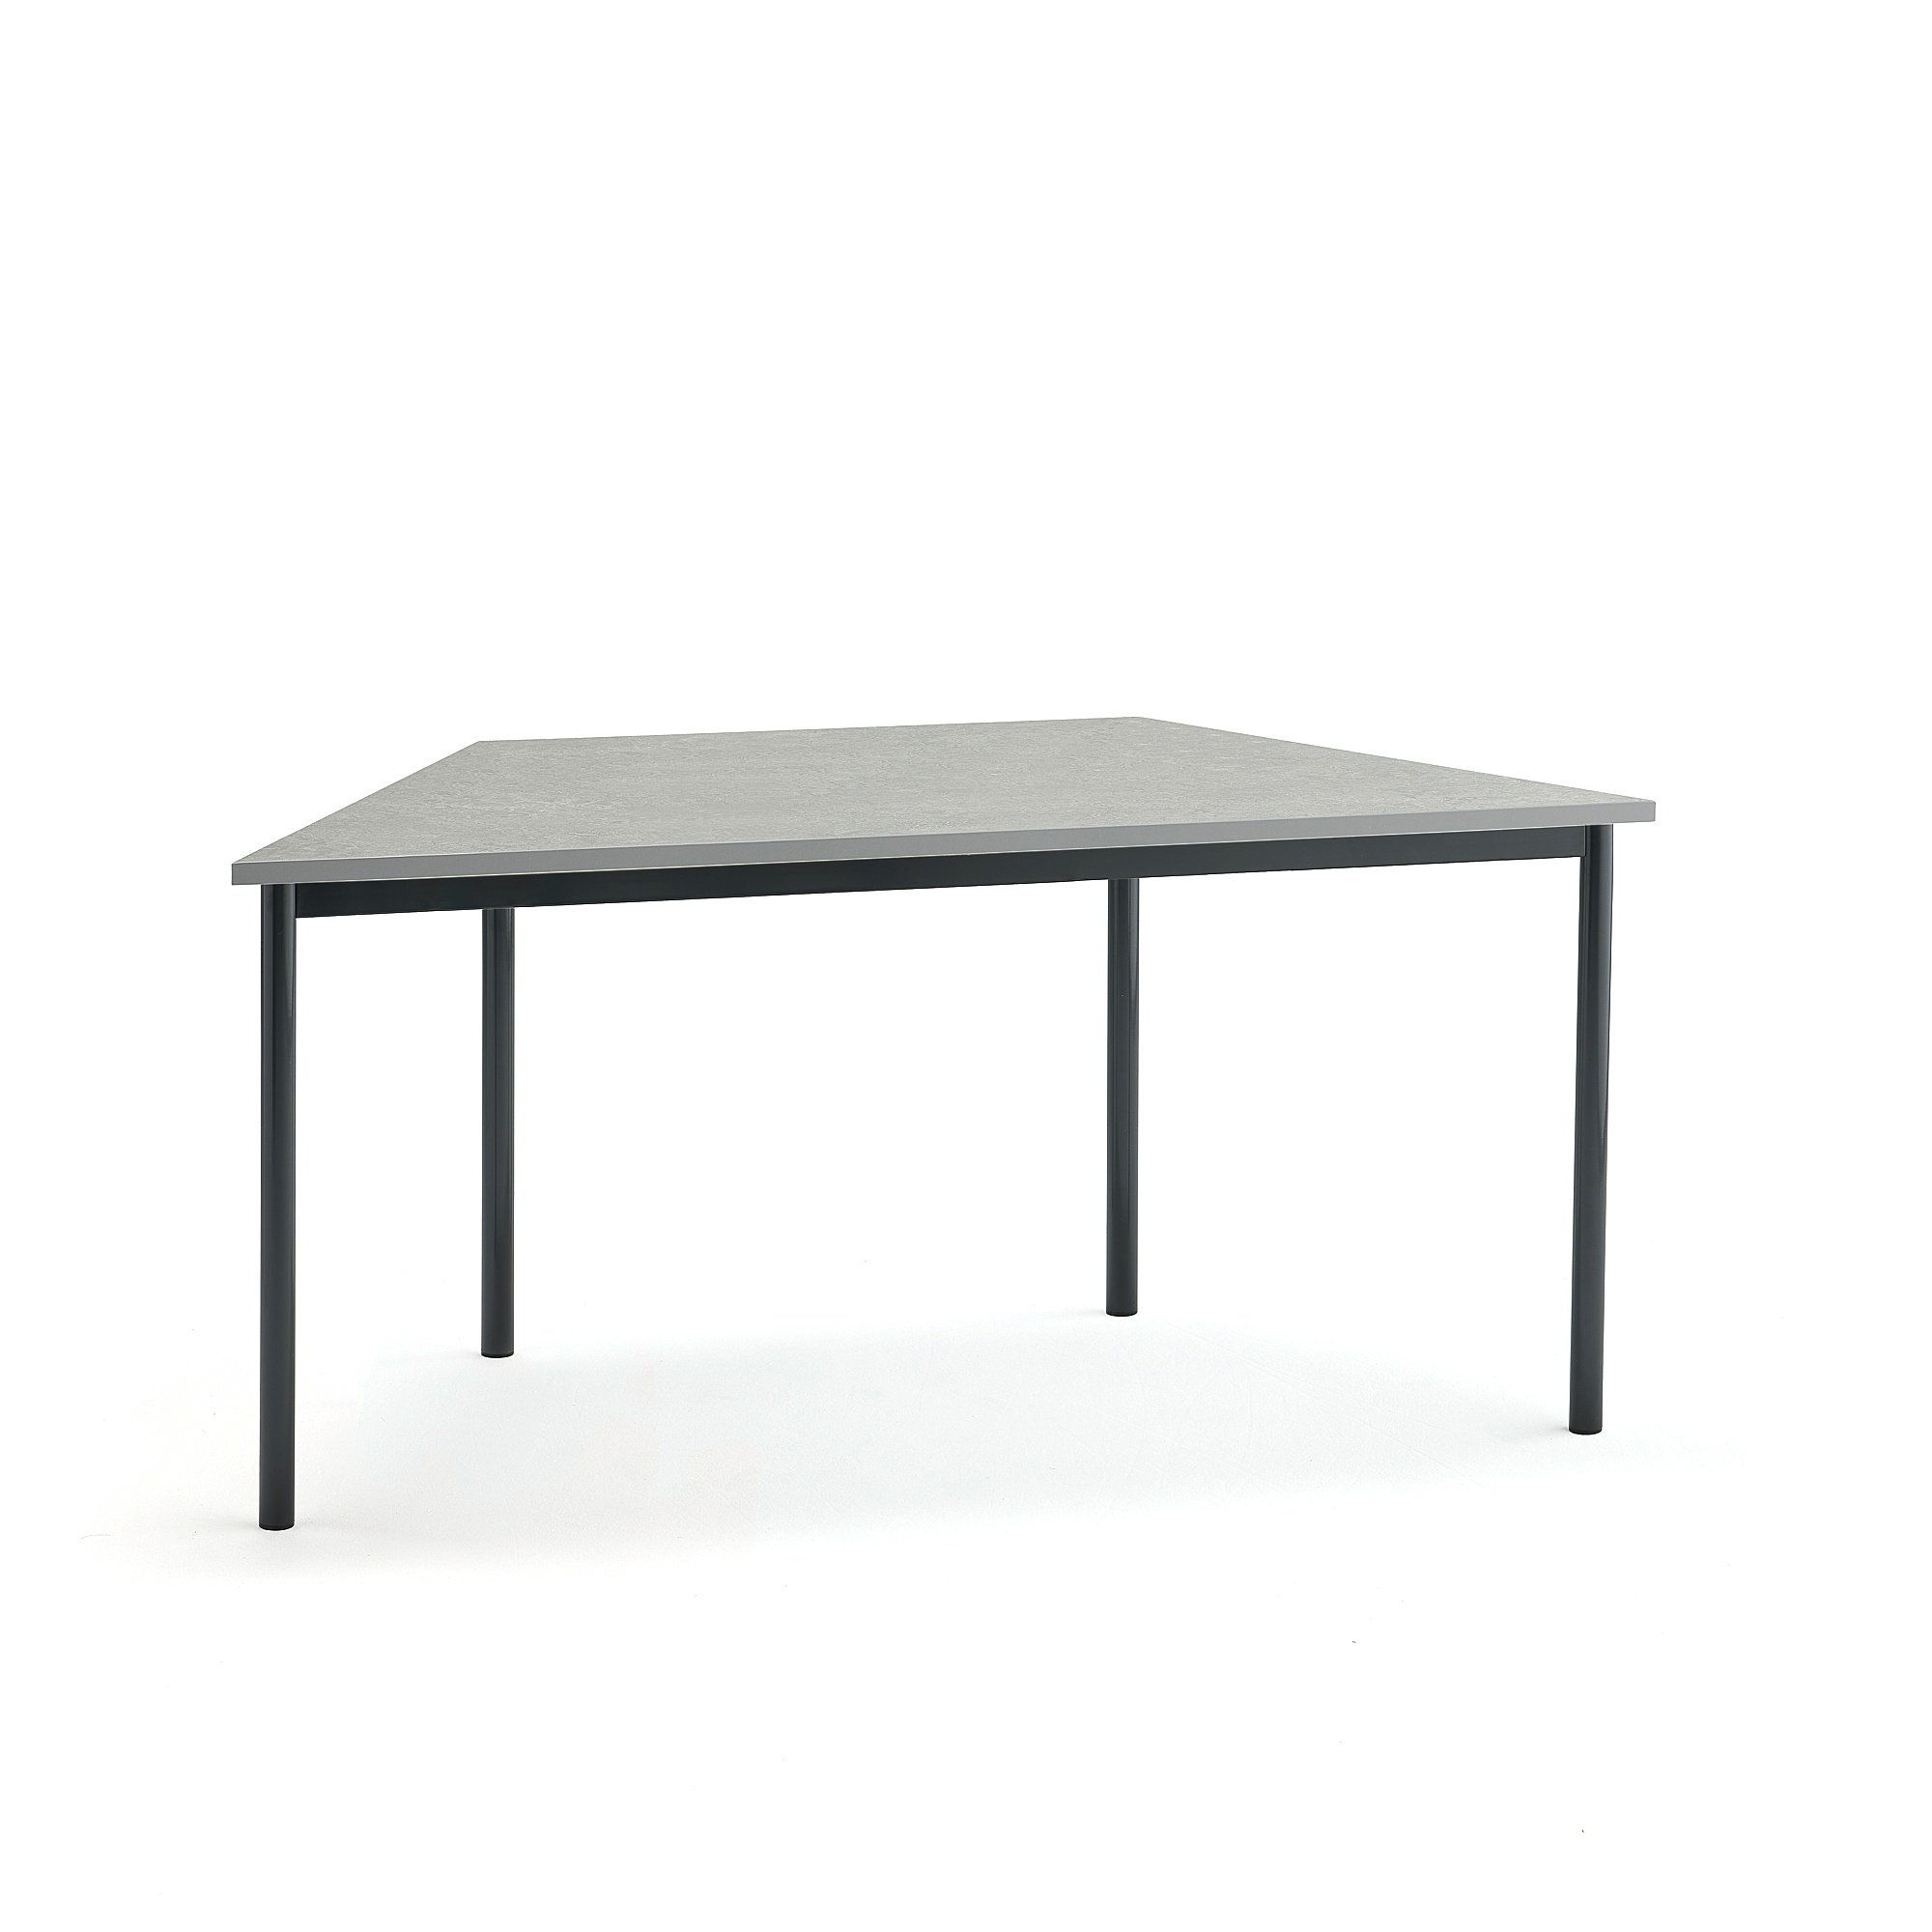 Stôl SONITUS TRAPETS, 1600x800x720 mm, linoleum - šedá, antracit